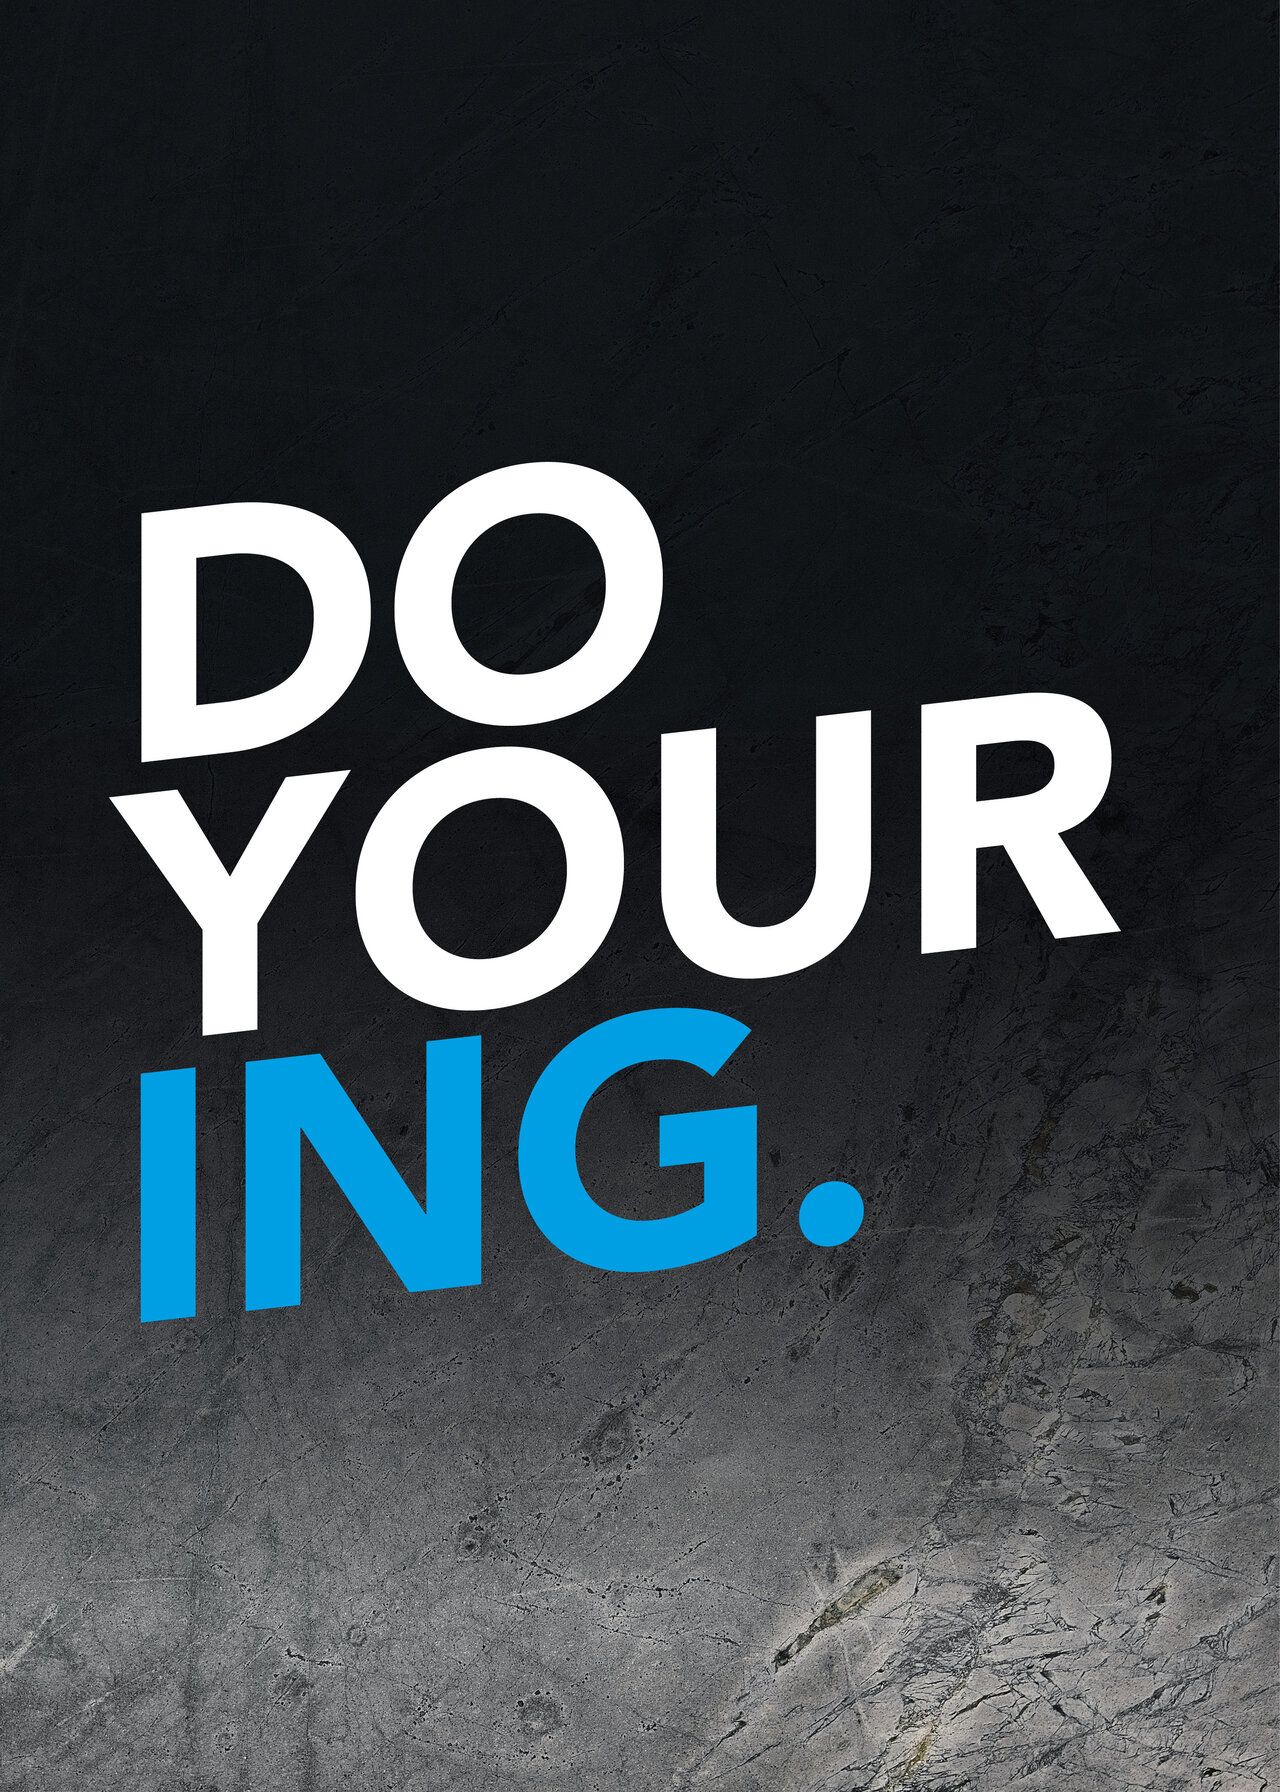 Der Text "Do your ing." in weiß-blau.